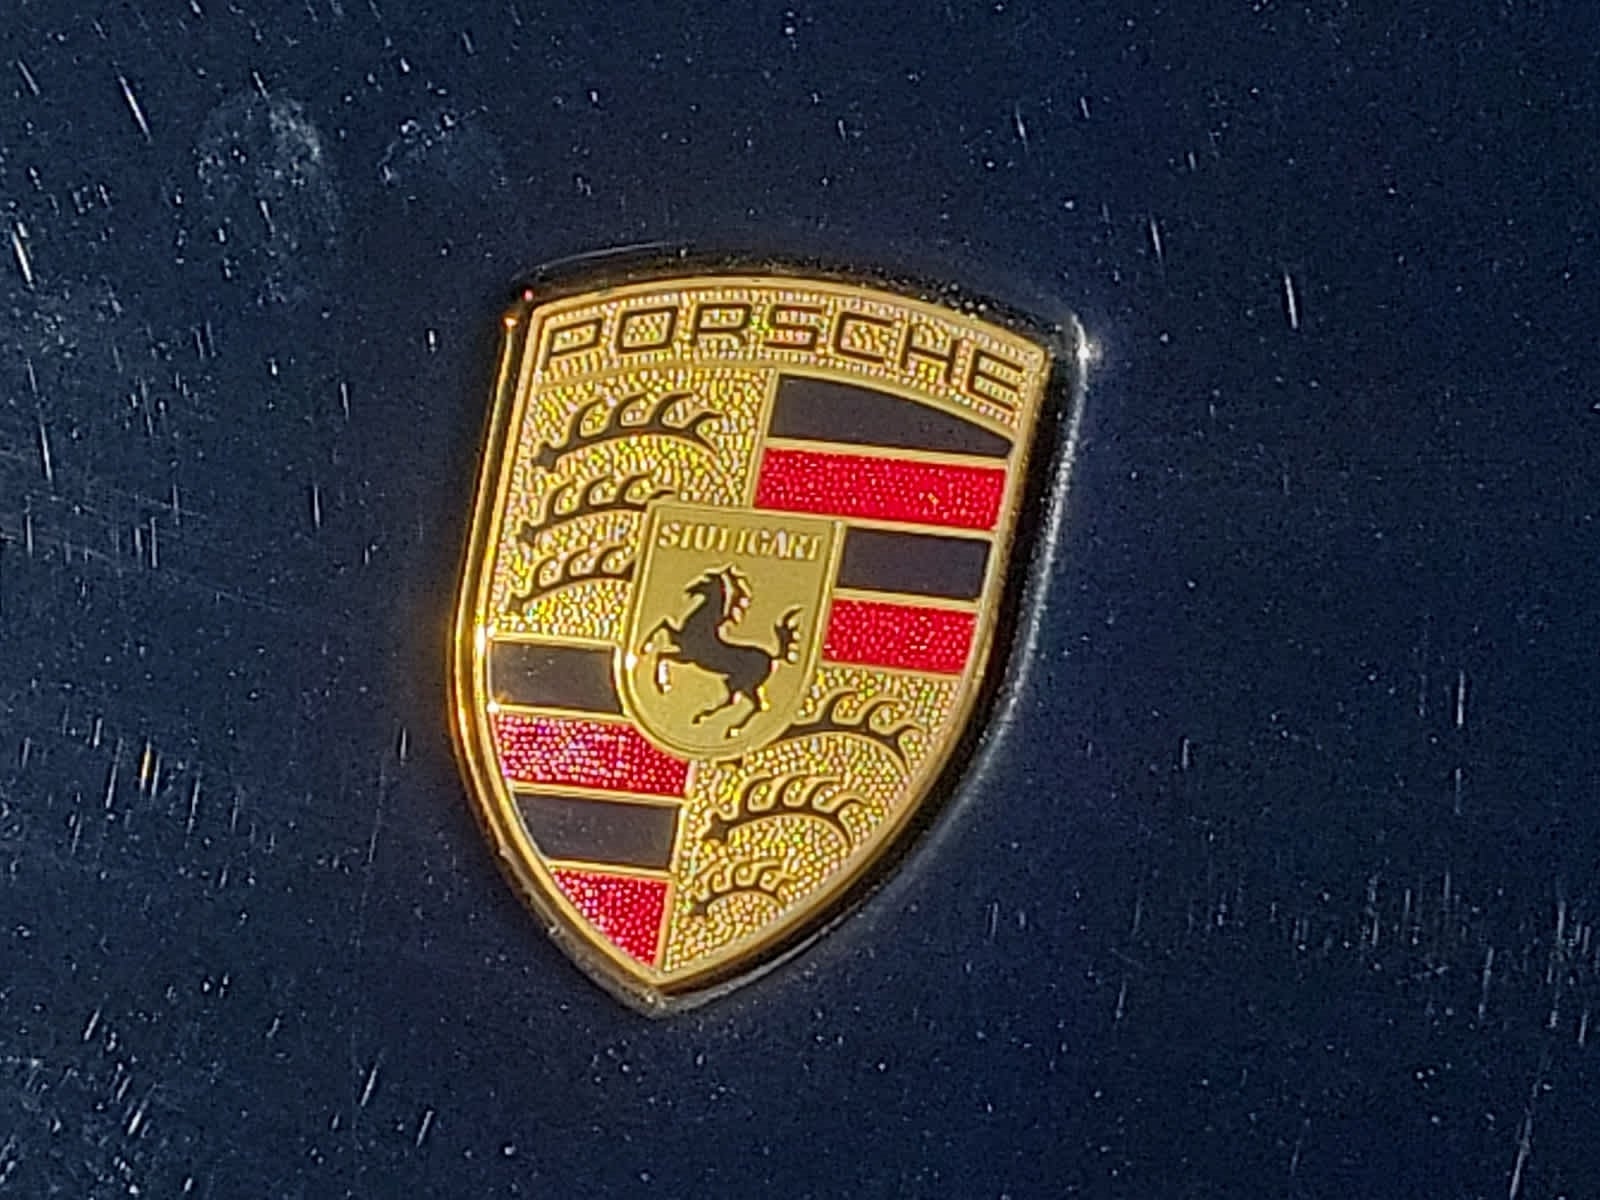 2019 Porsche 911 Turbo Cabriolet